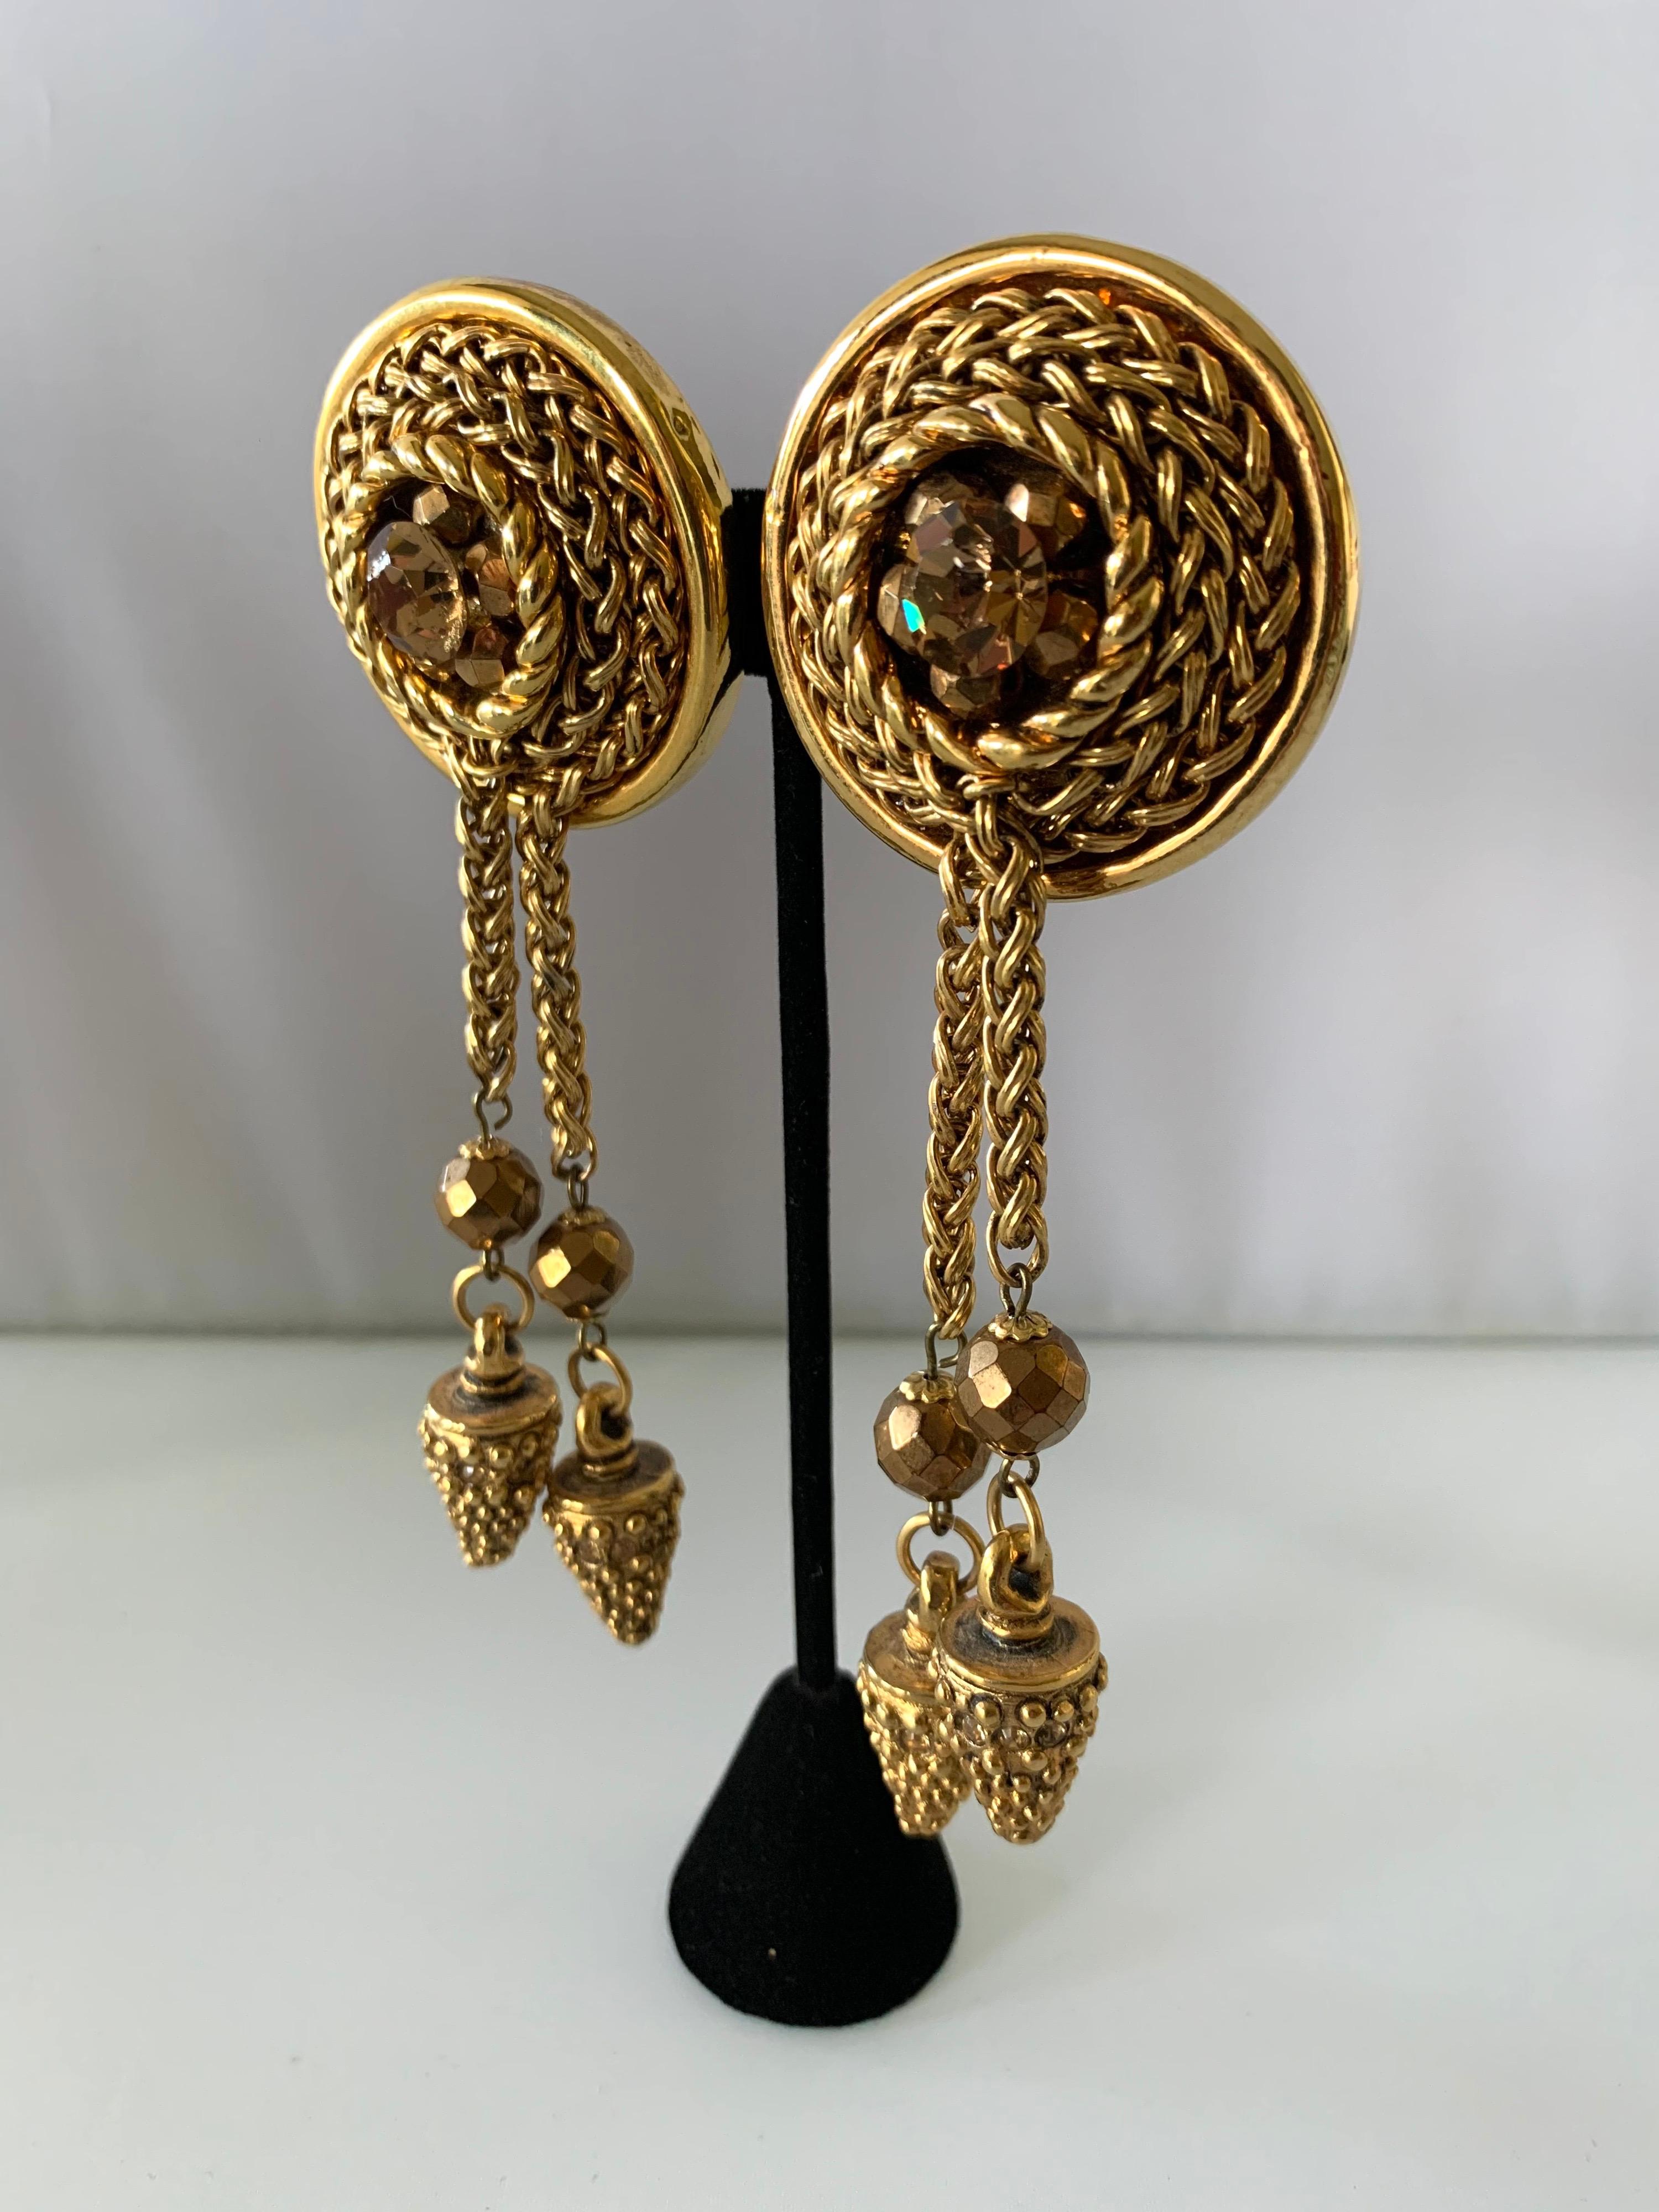 Vintage übergroße Bronze doppelte Quaste Aussage Clip-on Ohrringe von Claire Deve Paris - circa 1980 von großen Bronze Glas facettierten Strasssteinen und Perlen akzentuiert.